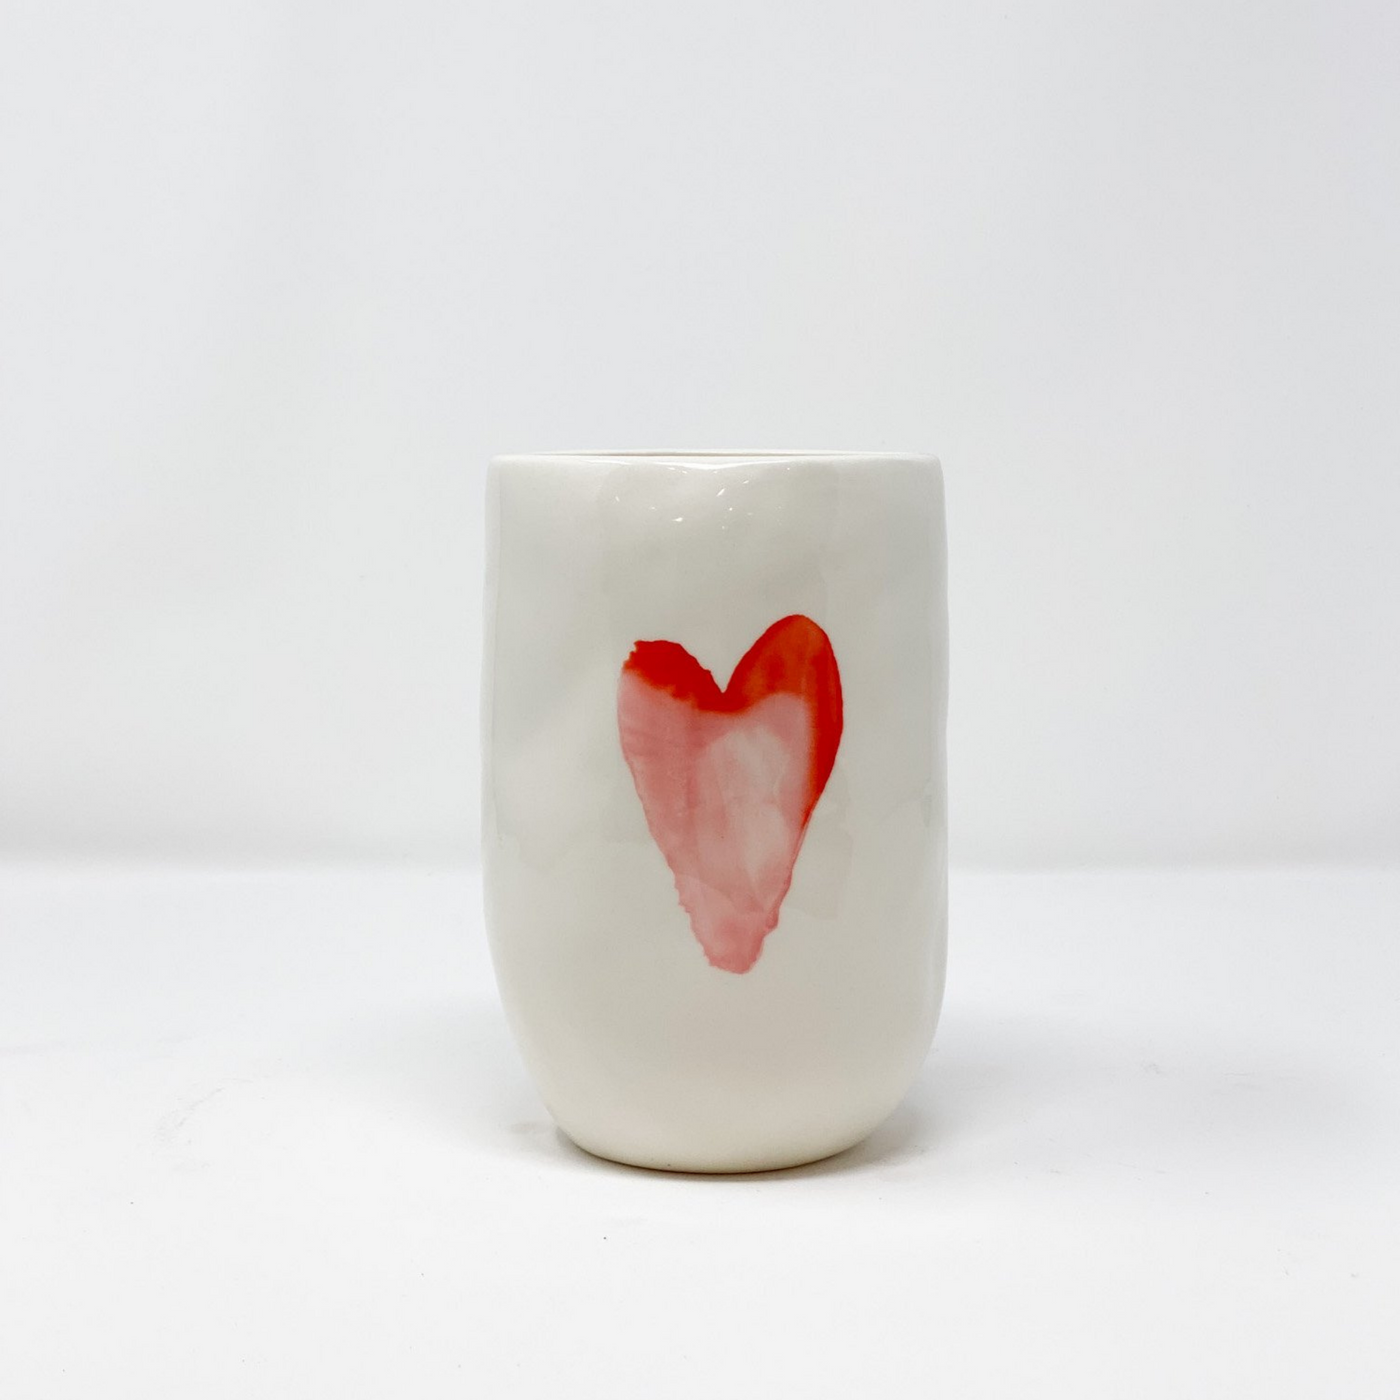 Love Vase